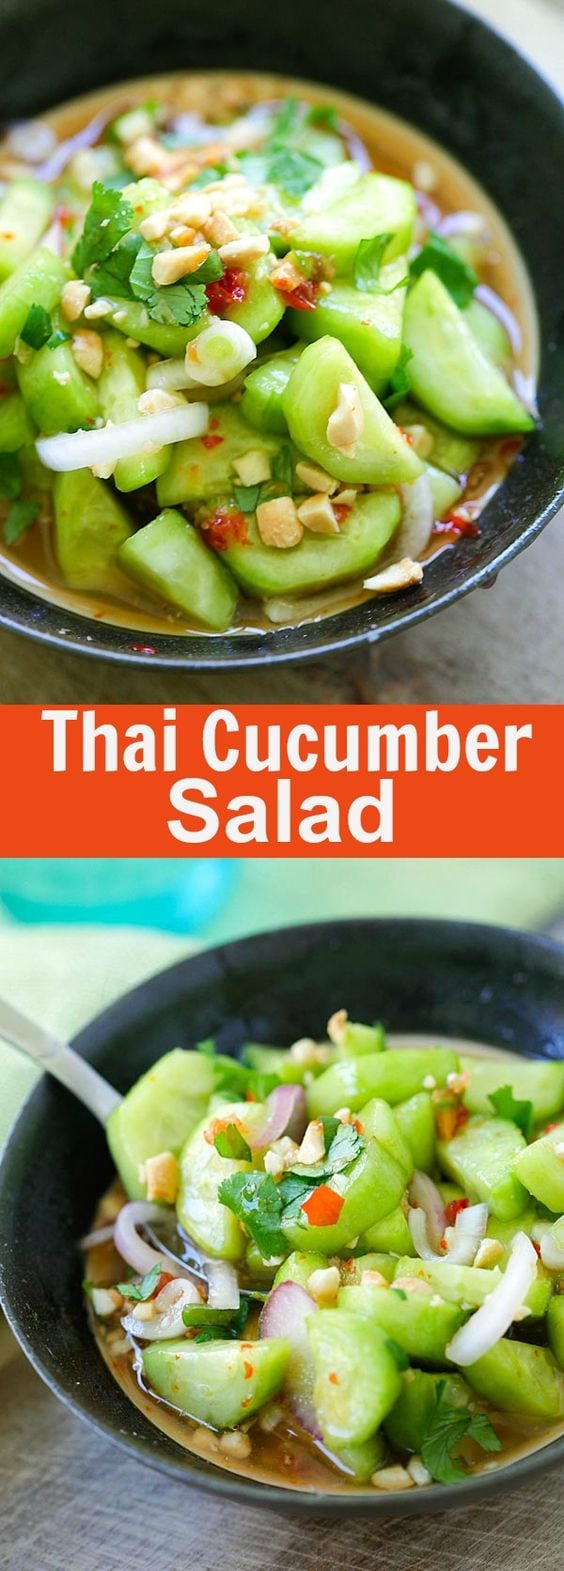 authentic thai cucumber salad recipe